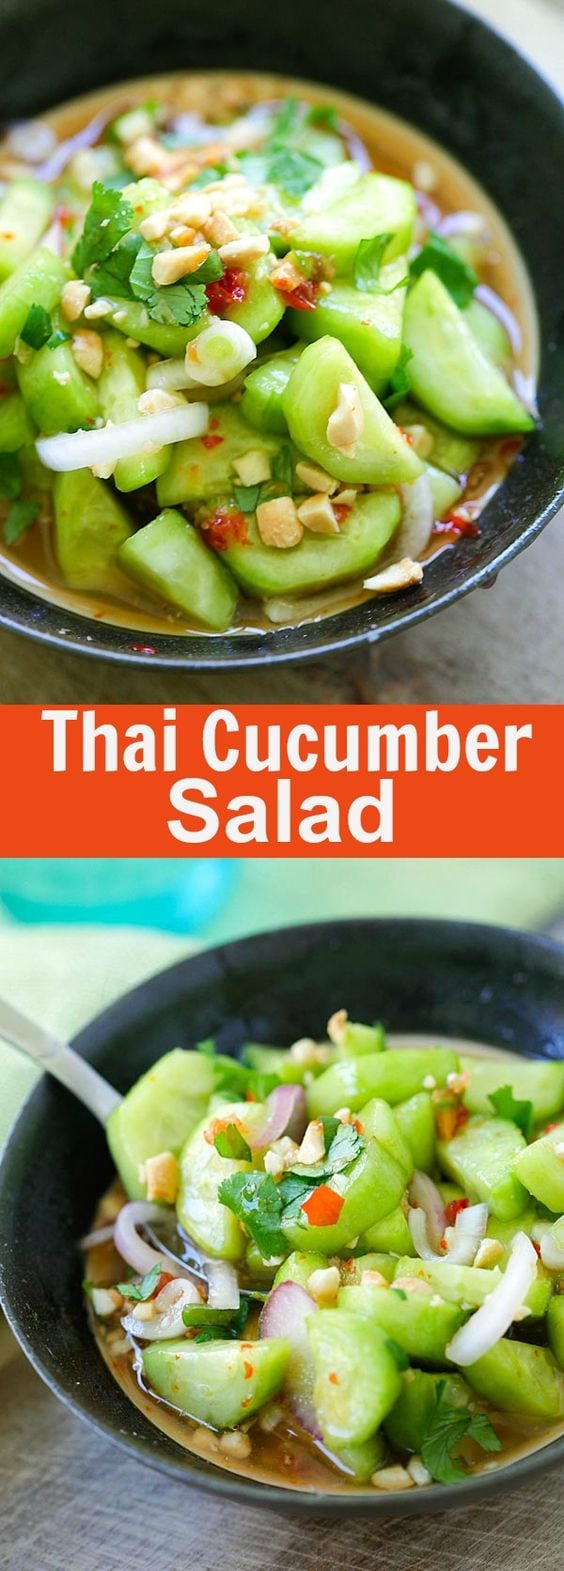 authentic thai cucumber salad recipe